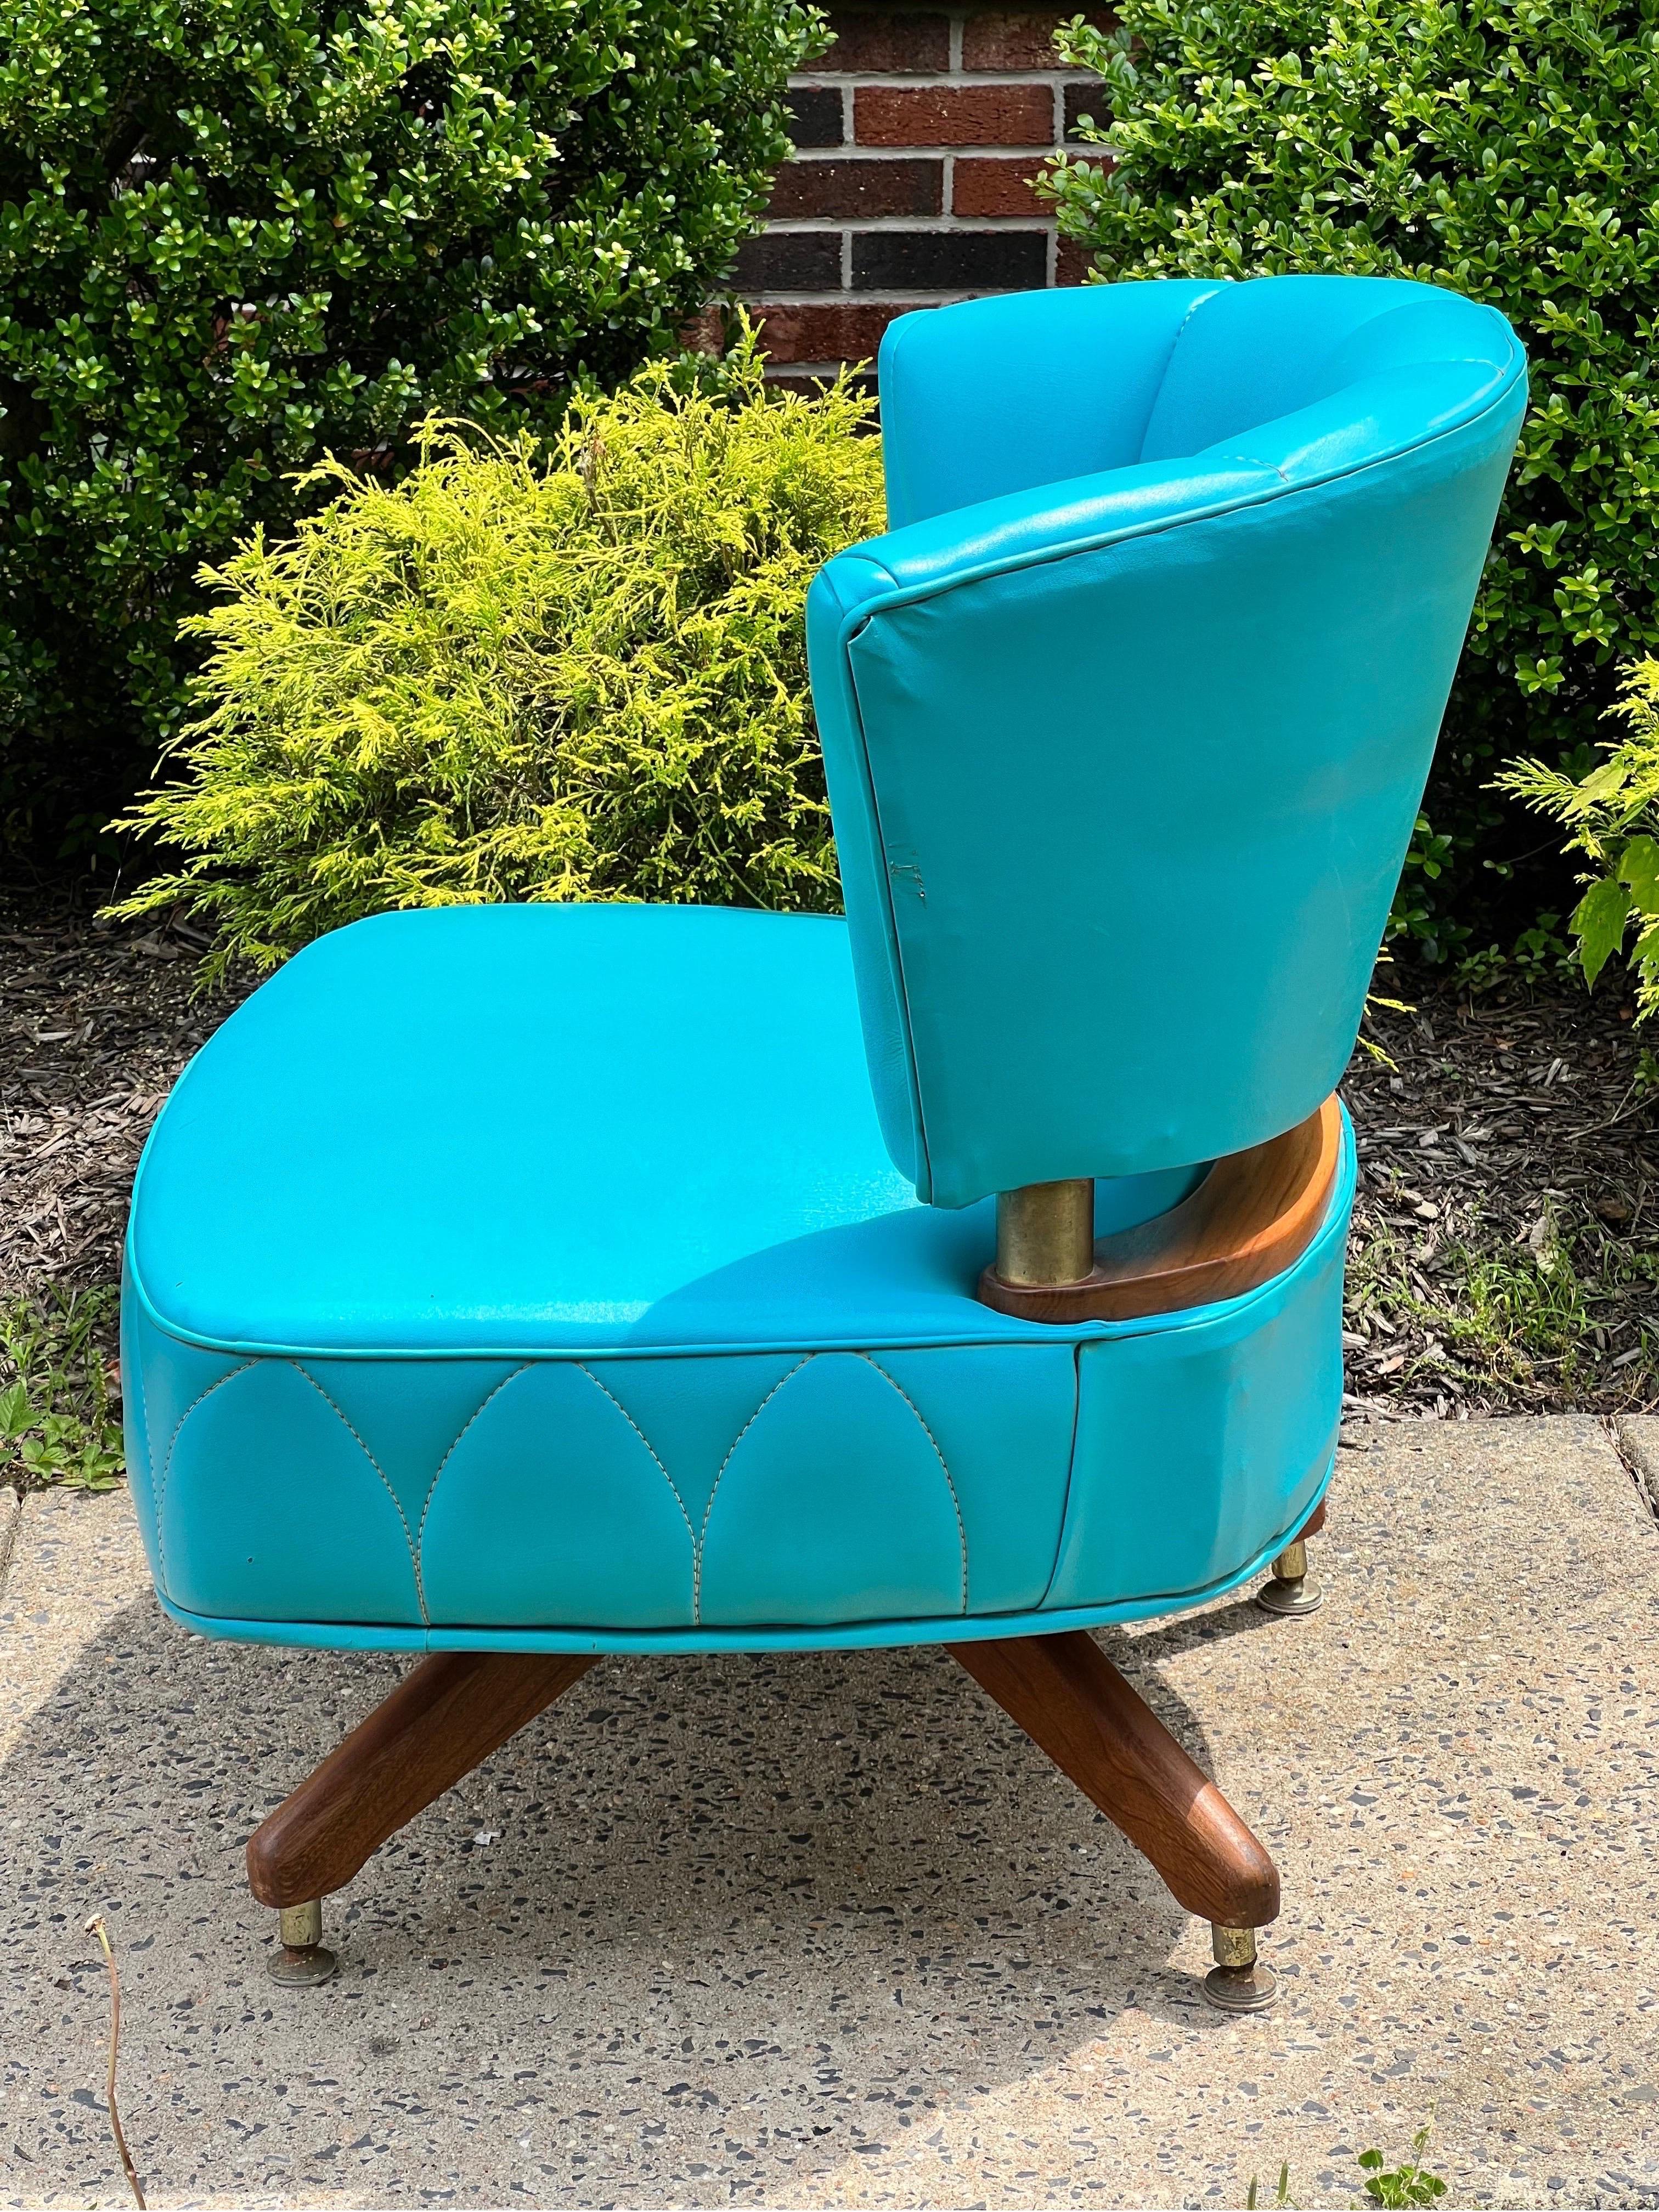 Fabuleux fauteuil pivotant vintage de Kroehler, 1962.

Une belle chaise rembourrée dans une nuance vibrante de faux cuir turquoise avec un détail unique de motif de couture. La couleur de la sellerie a conservé sa vitalité et ne présente aucune